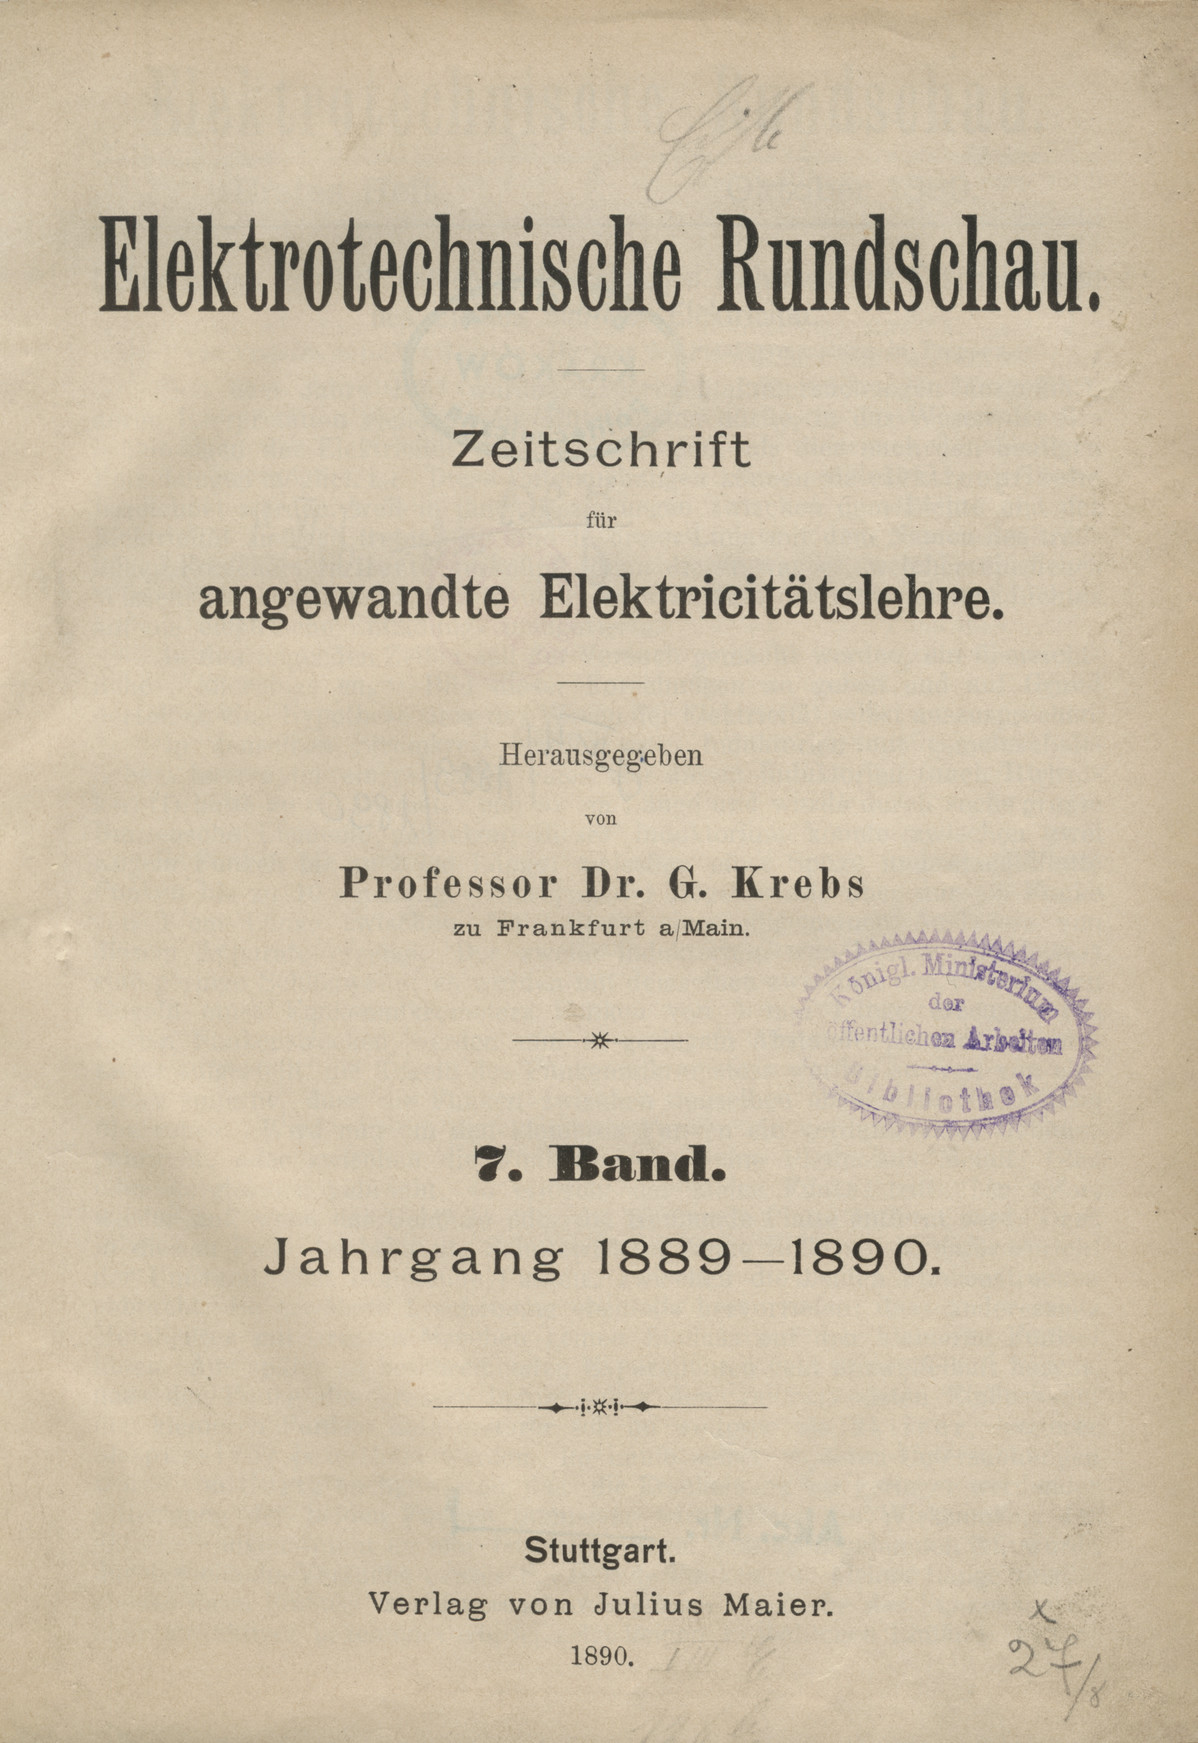 Elektrotechnische Rundschau : Zeitschrift für angewandte Elektrizitätslehre, 1889-1890, Index